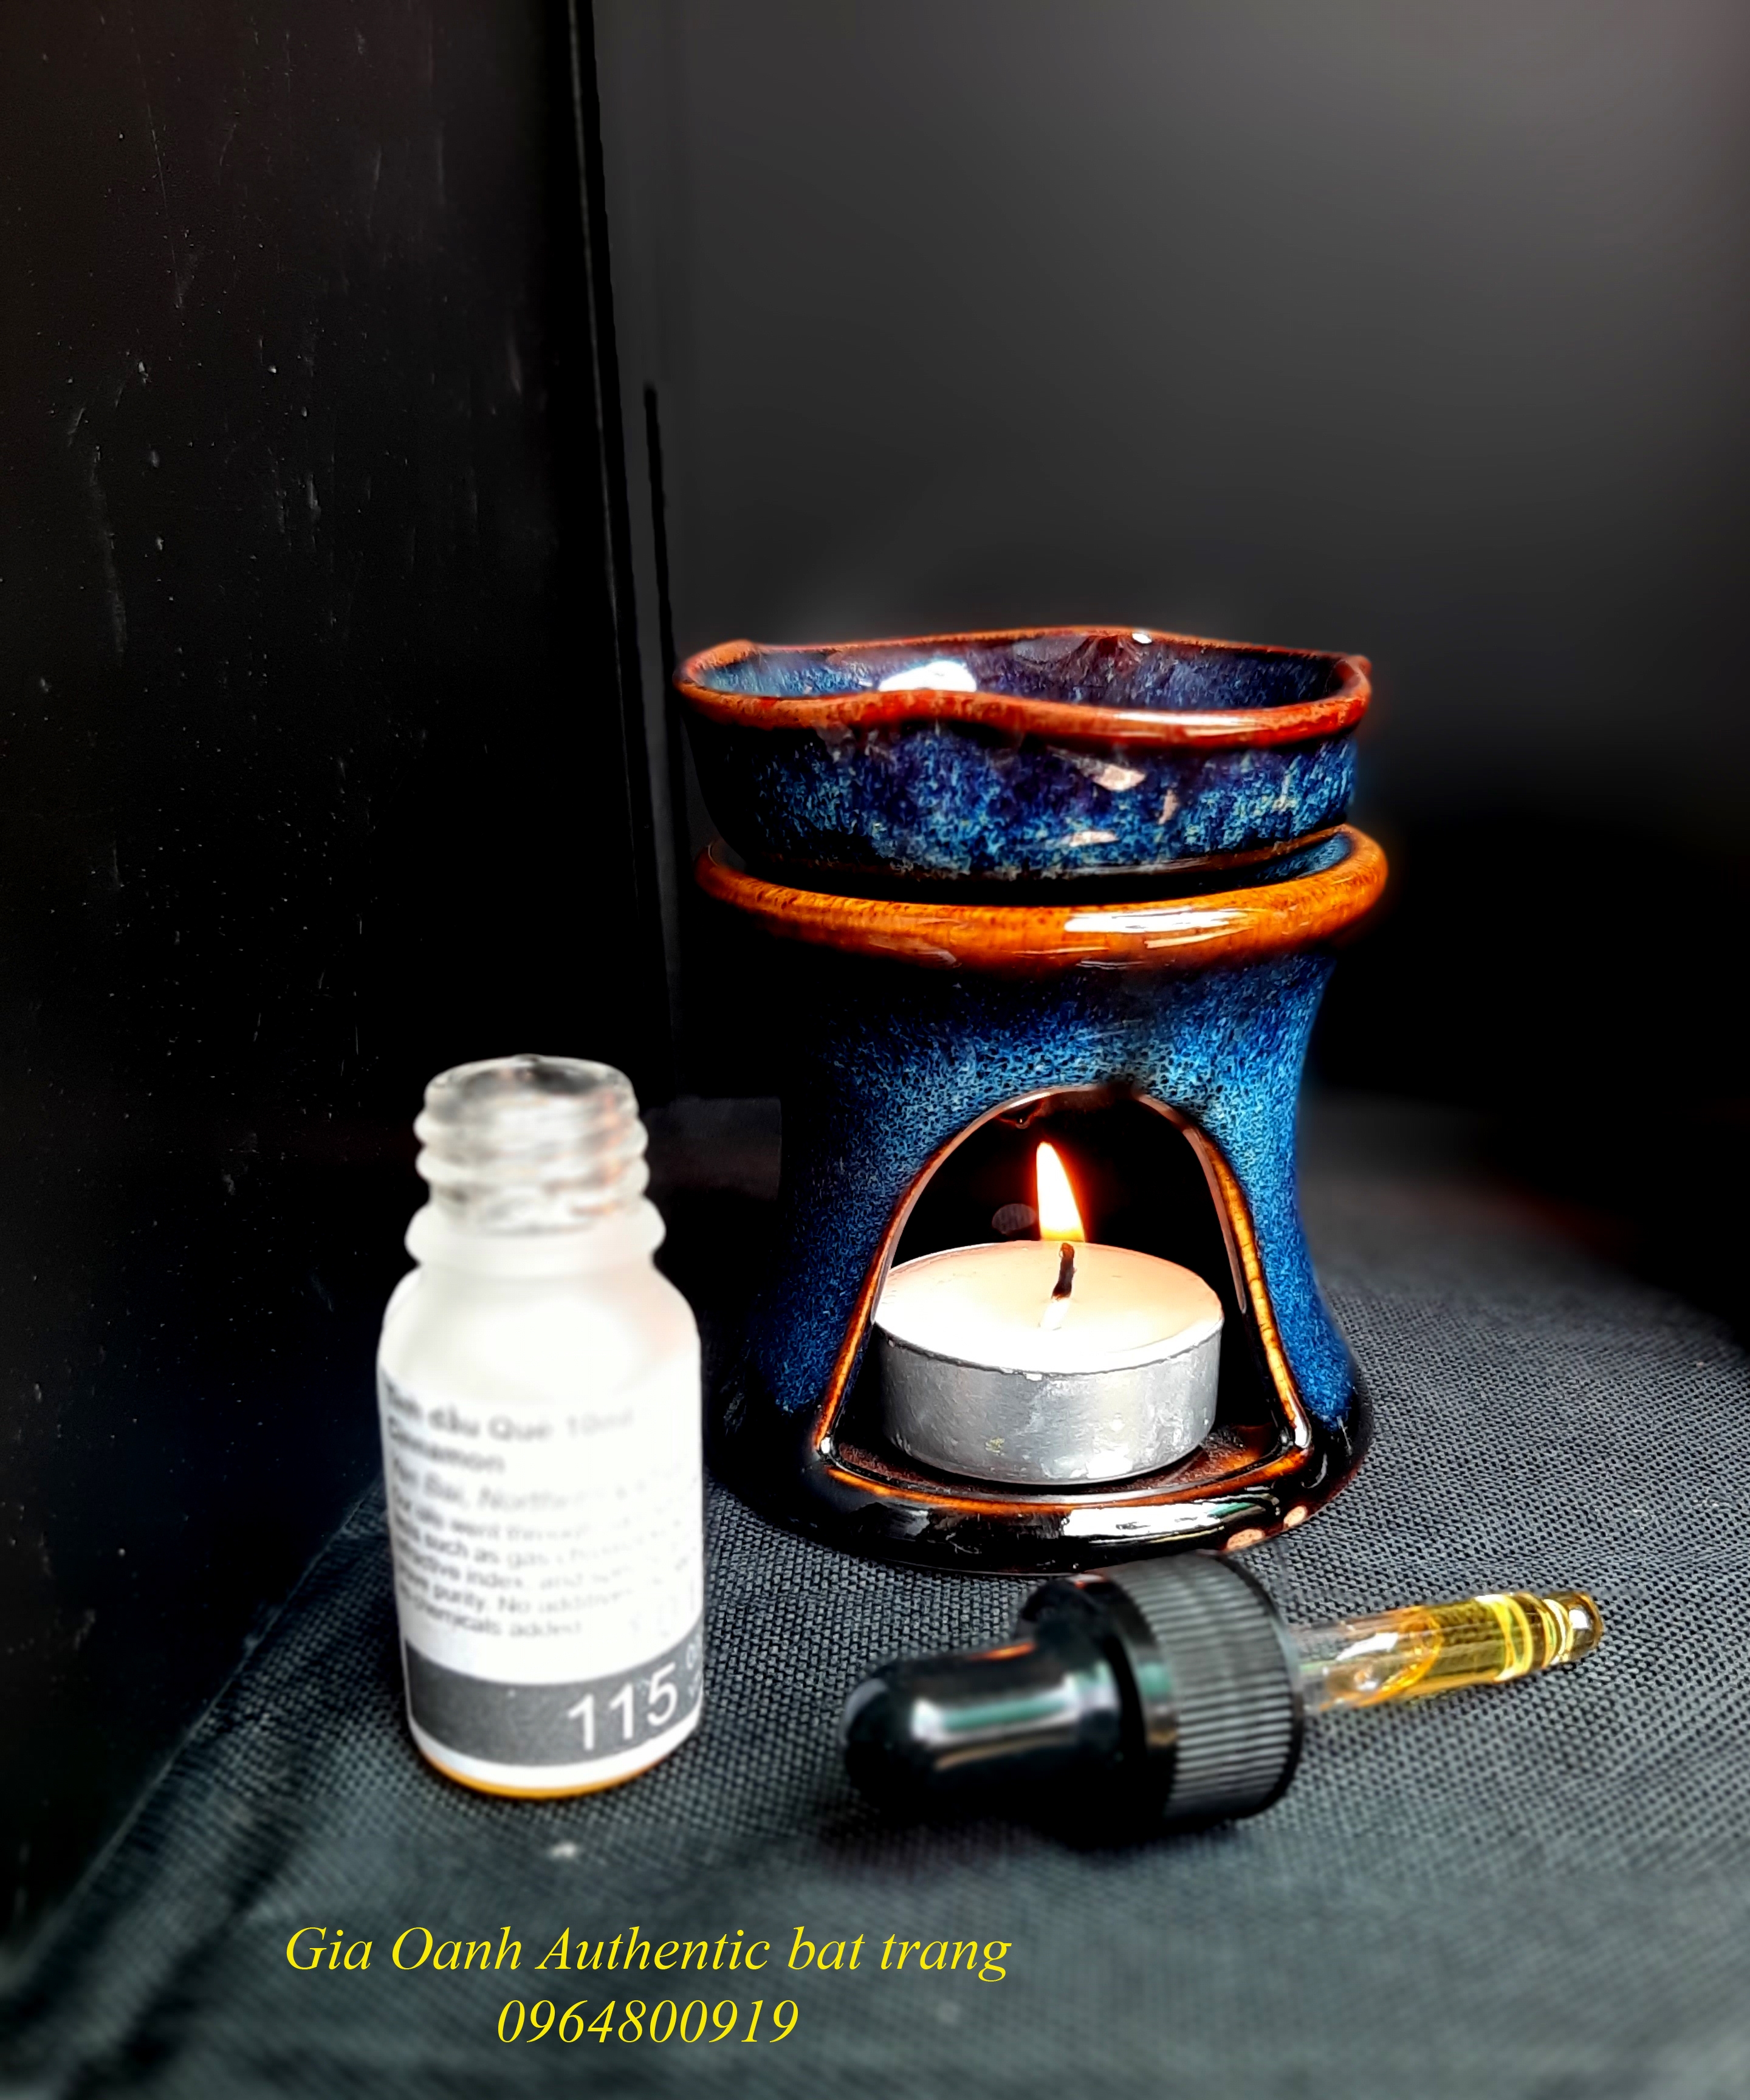 Oil burner set/ Bộ đốt tinh dầu men xanh hỏa biến đẳng cấp sản xuất tại xưởng gốm sứ Gia Oanh Authentic bat trang